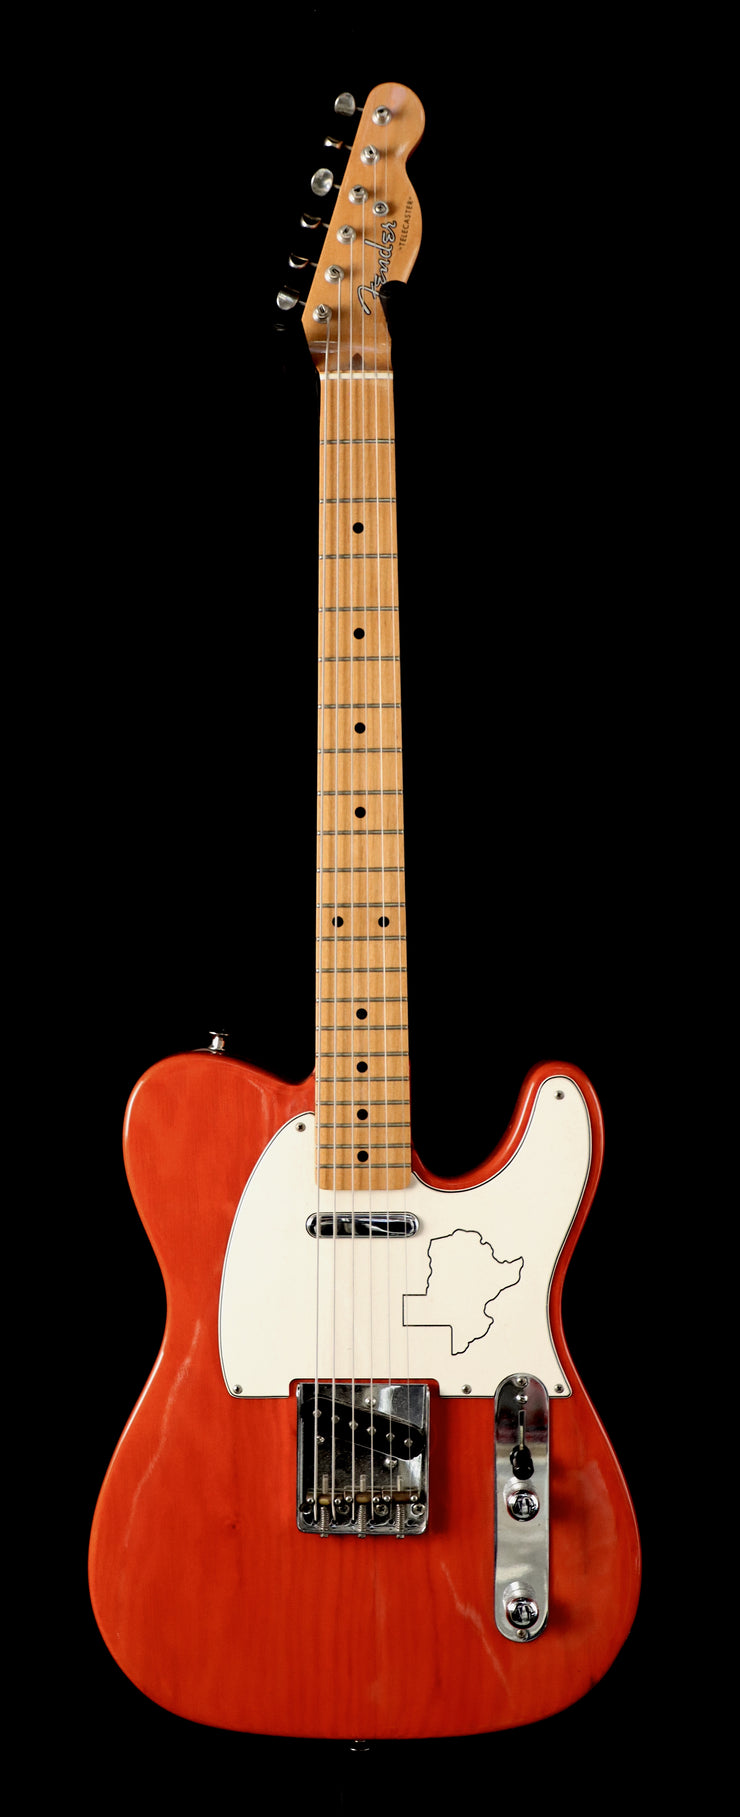 Fender Texas Special Telecaster